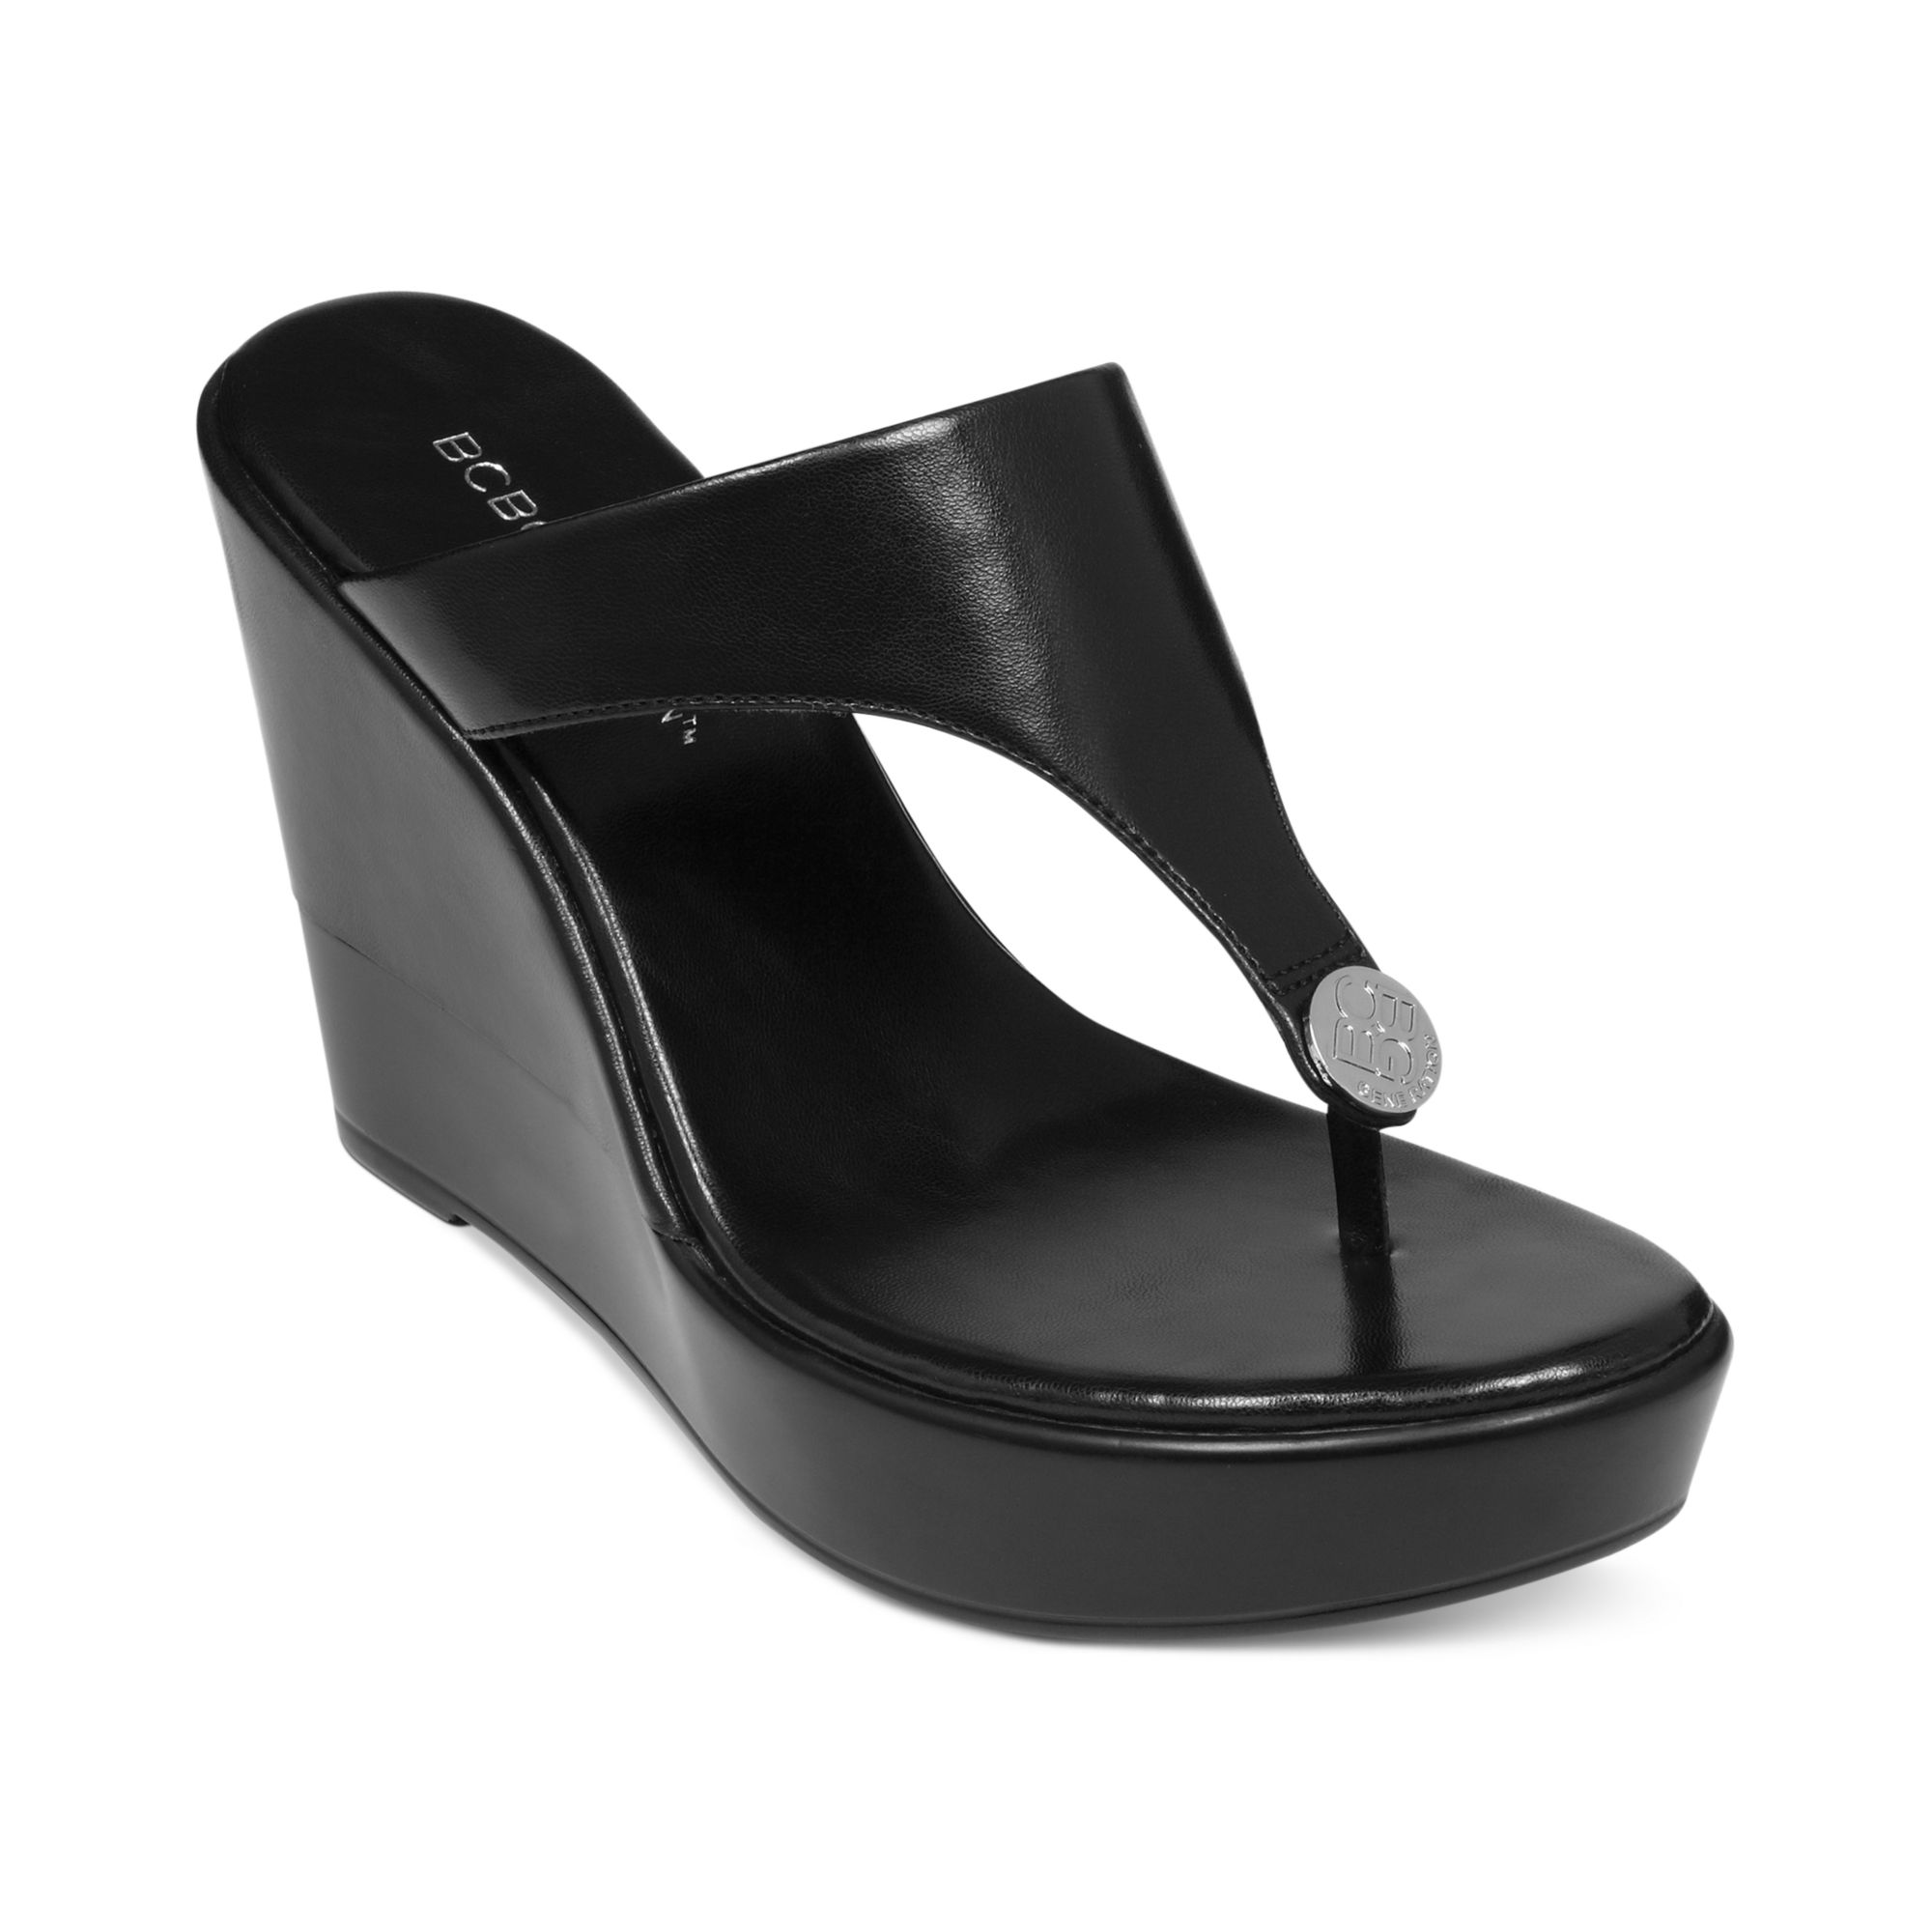 Black Wedge Heels